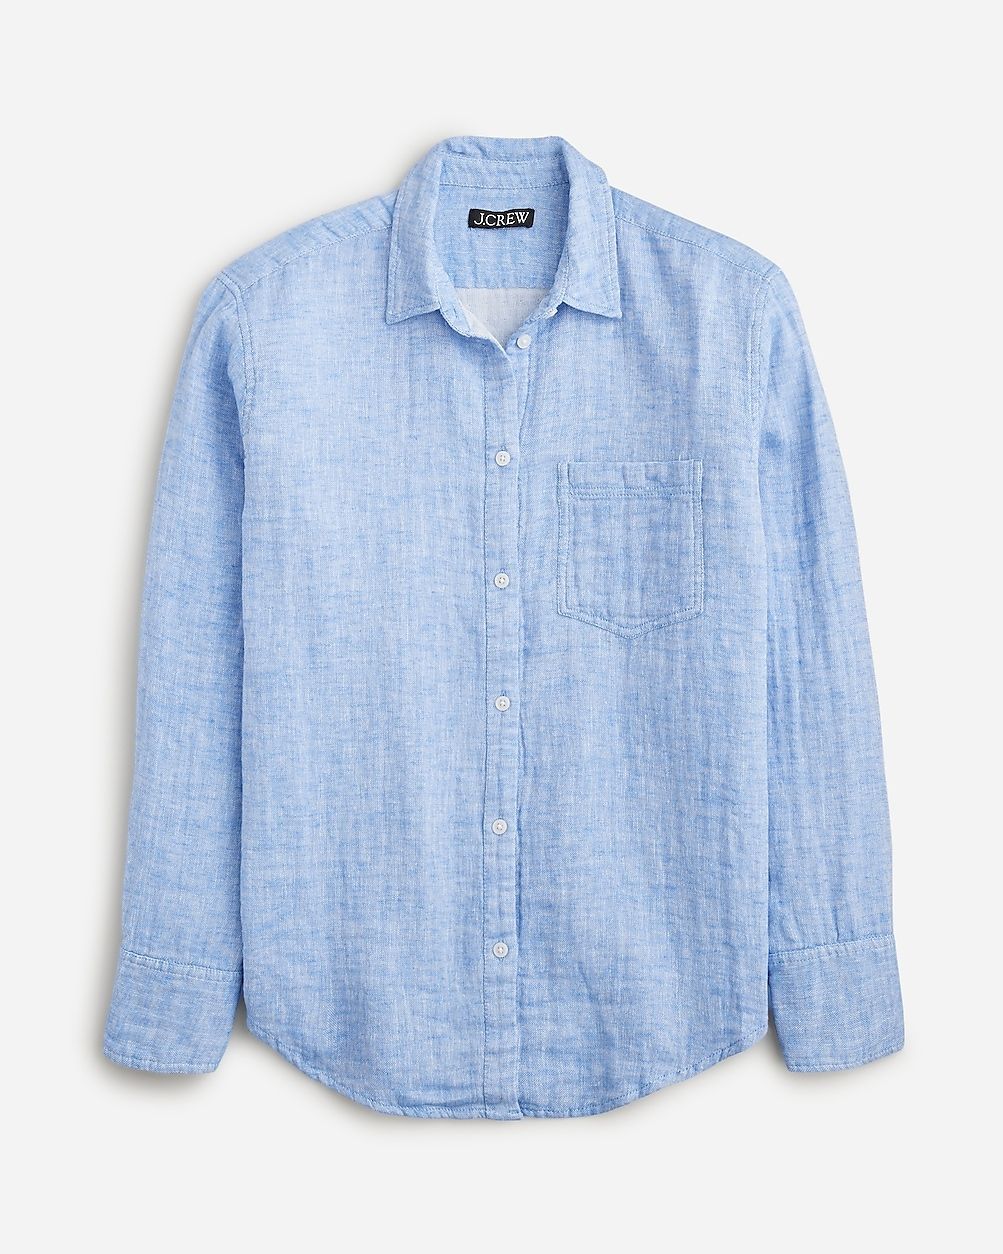 Garçon classic shirt in cotton-linen blend gauze | J.Crew US